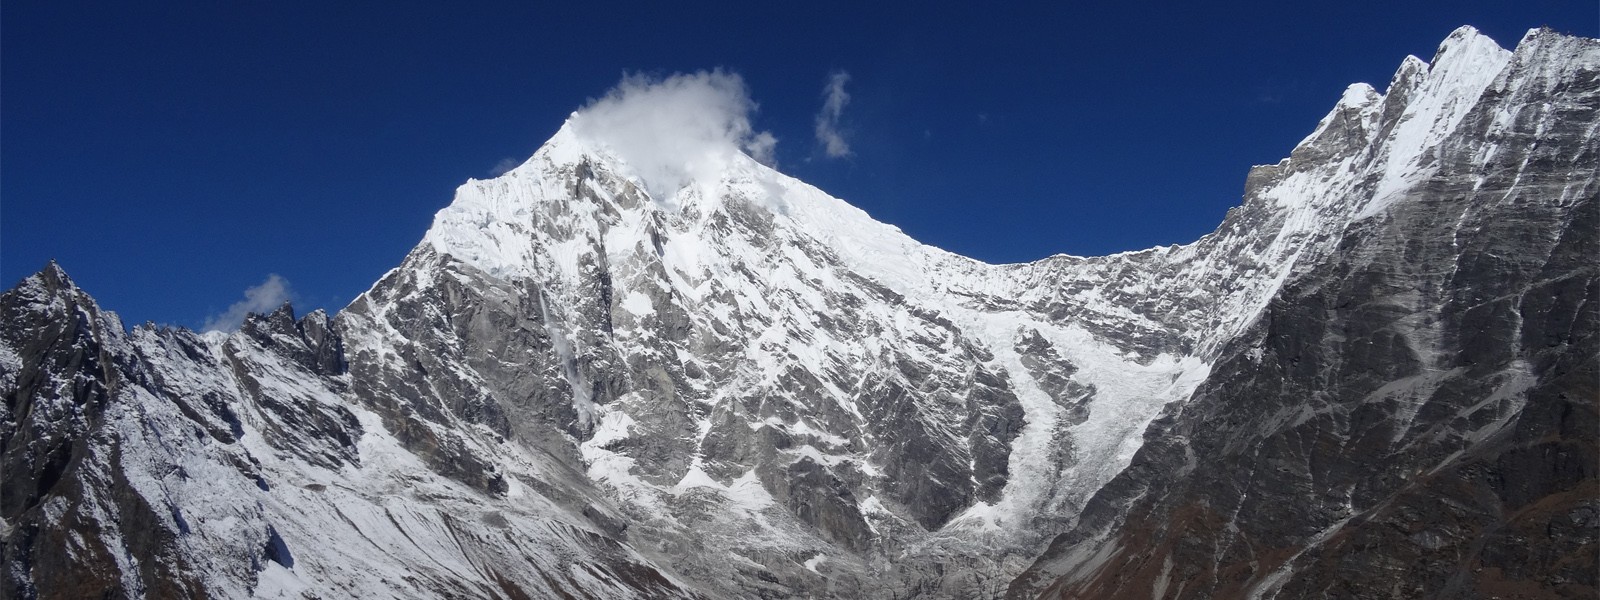 Mount Langtang Lirung Expedition - Nepal